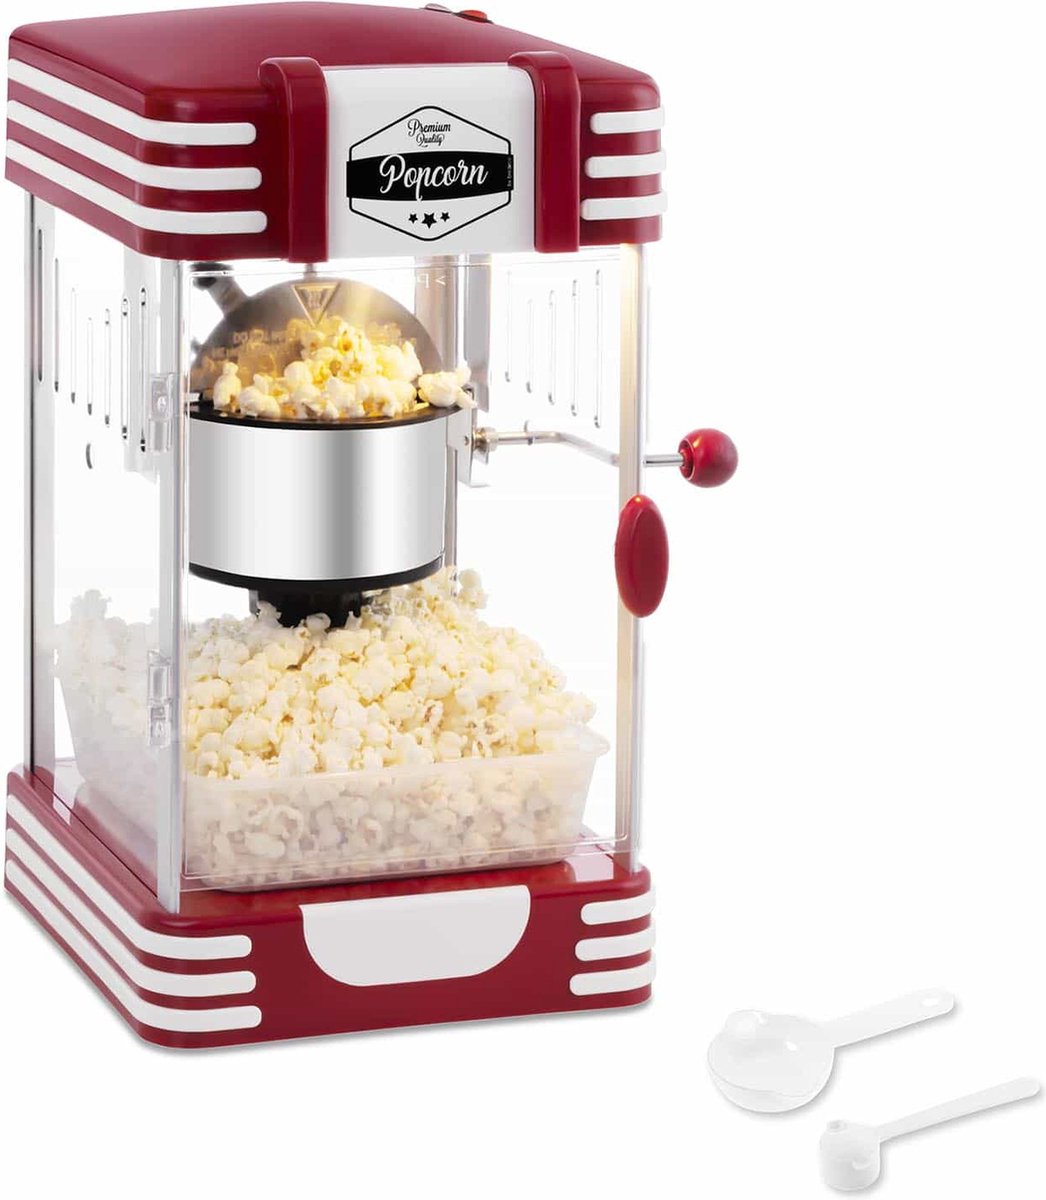 Bredeco Popcornmachine Retro-design jaren 50 rood